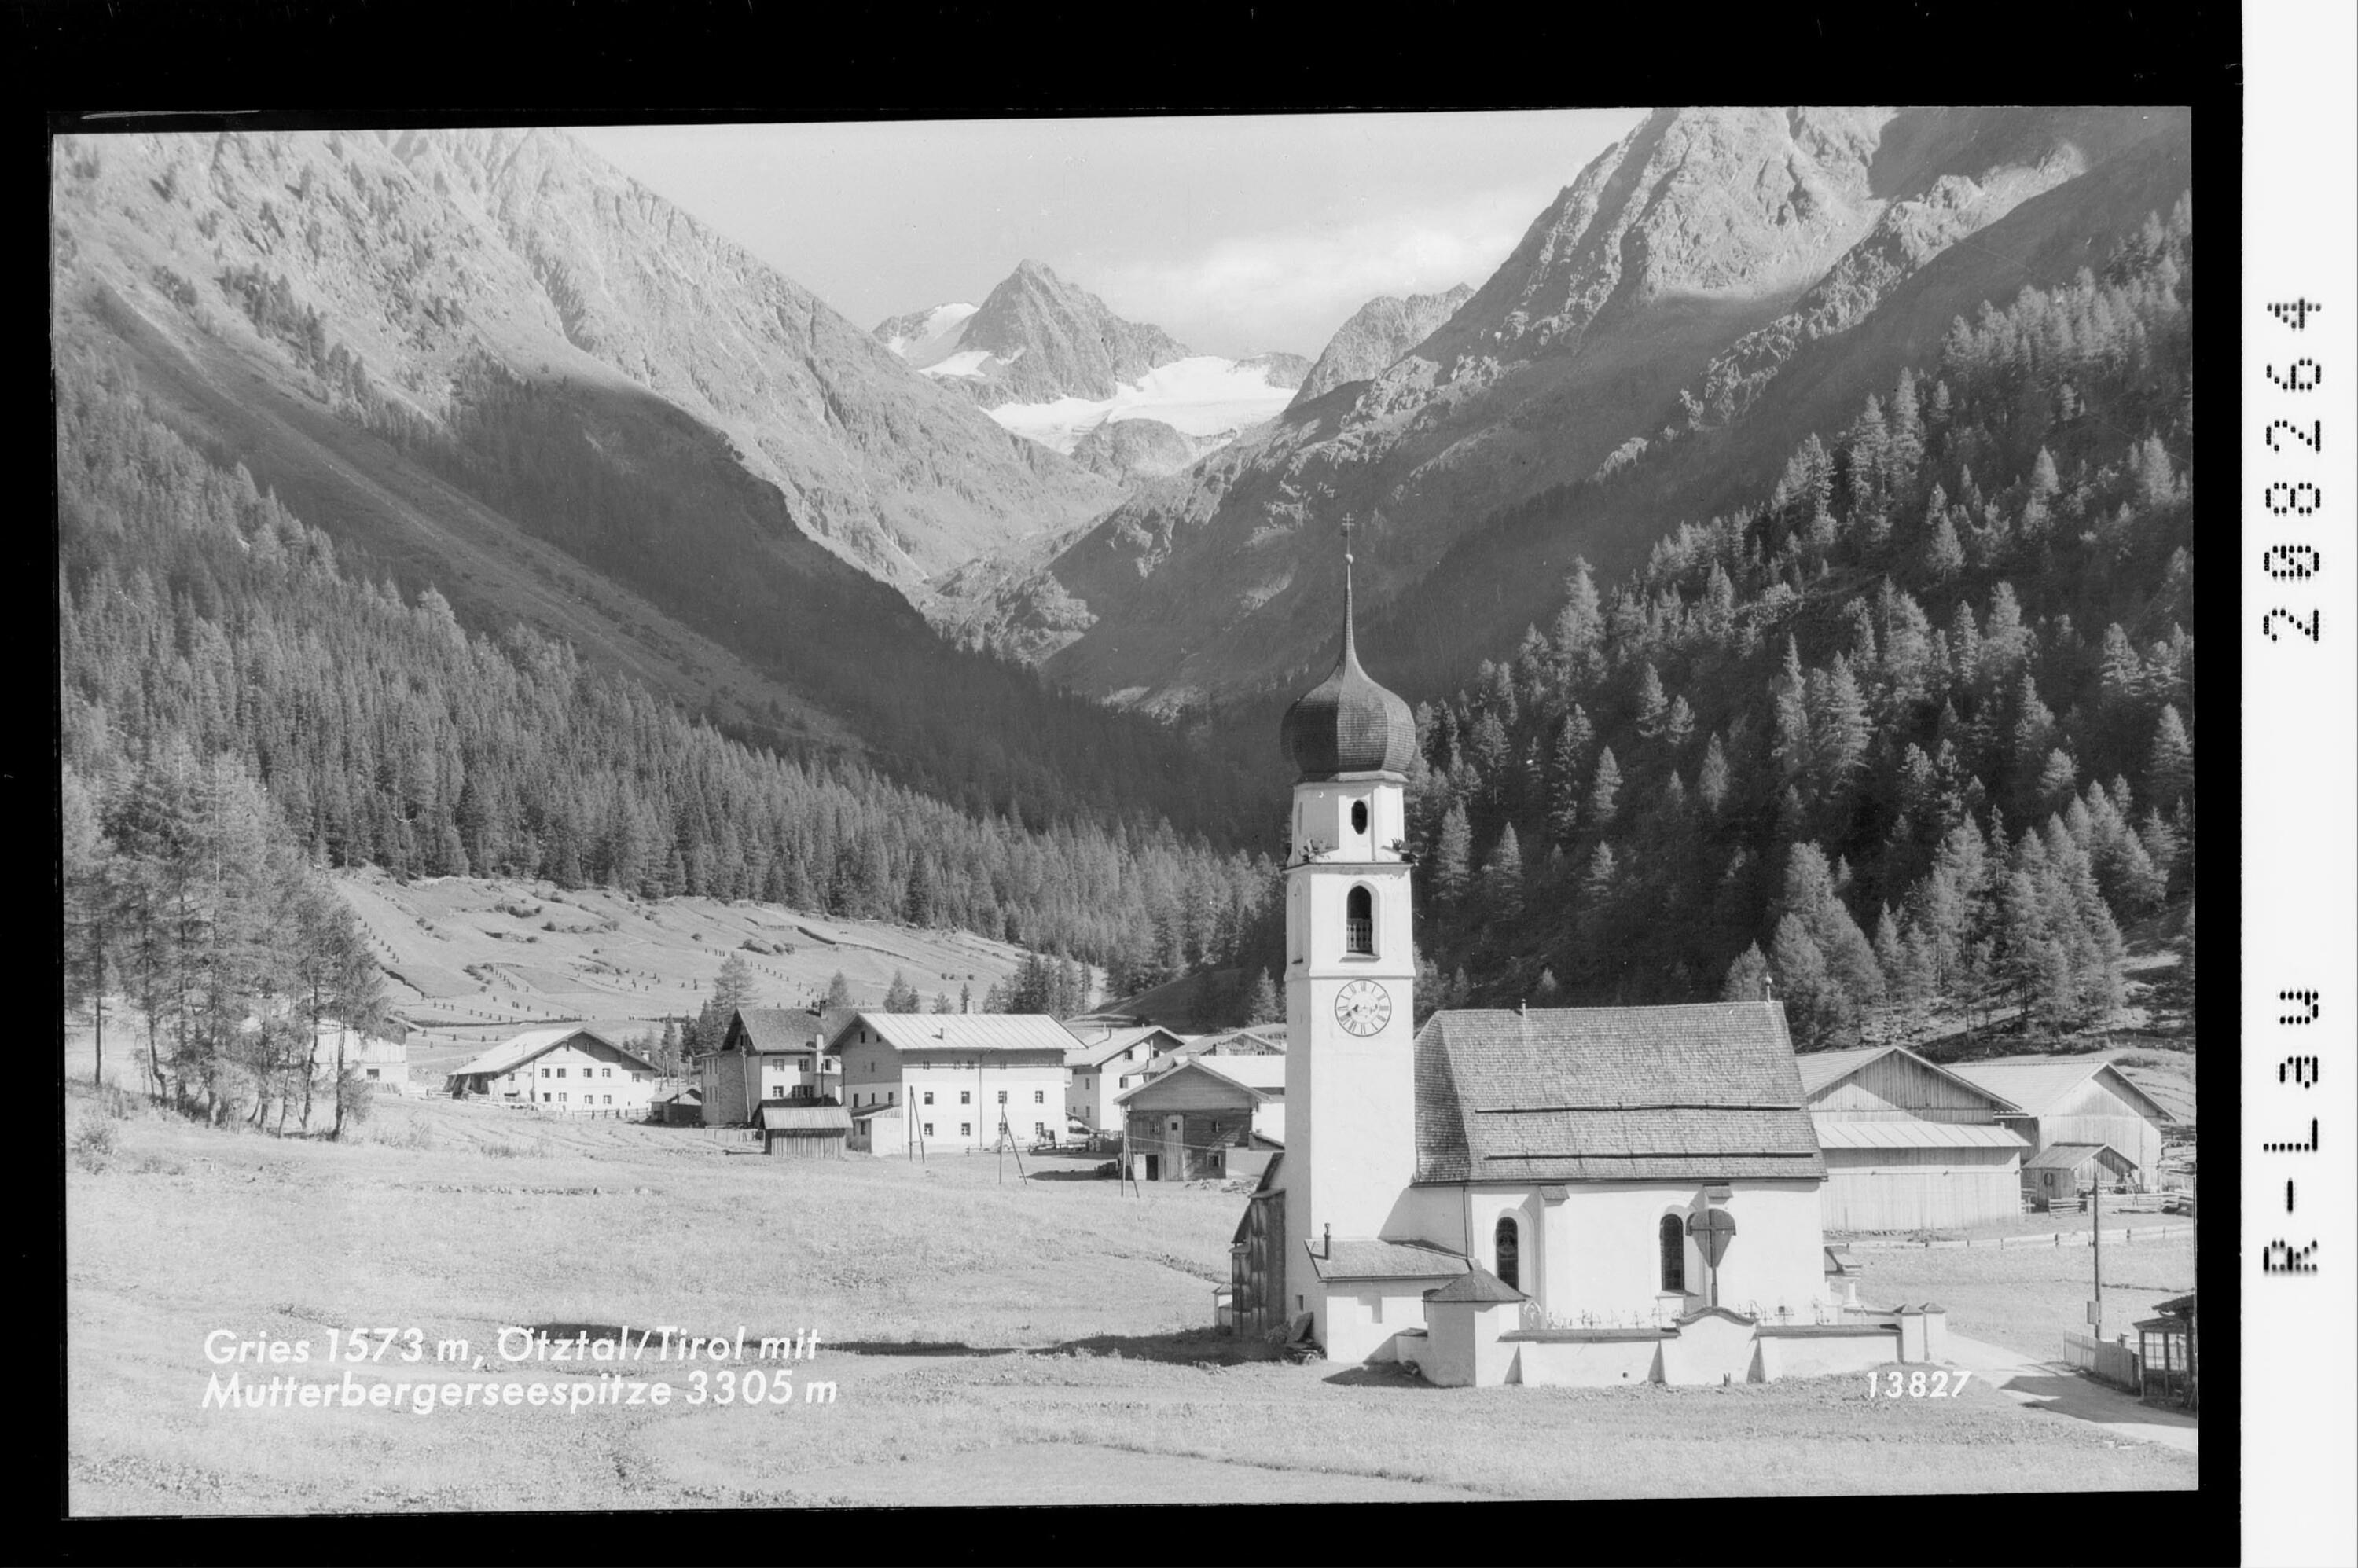 Gries 1573 m / Ötztal / Tirol mit Mutterbergerseespitze 3305 m></div>


    <hr>
    <div class=